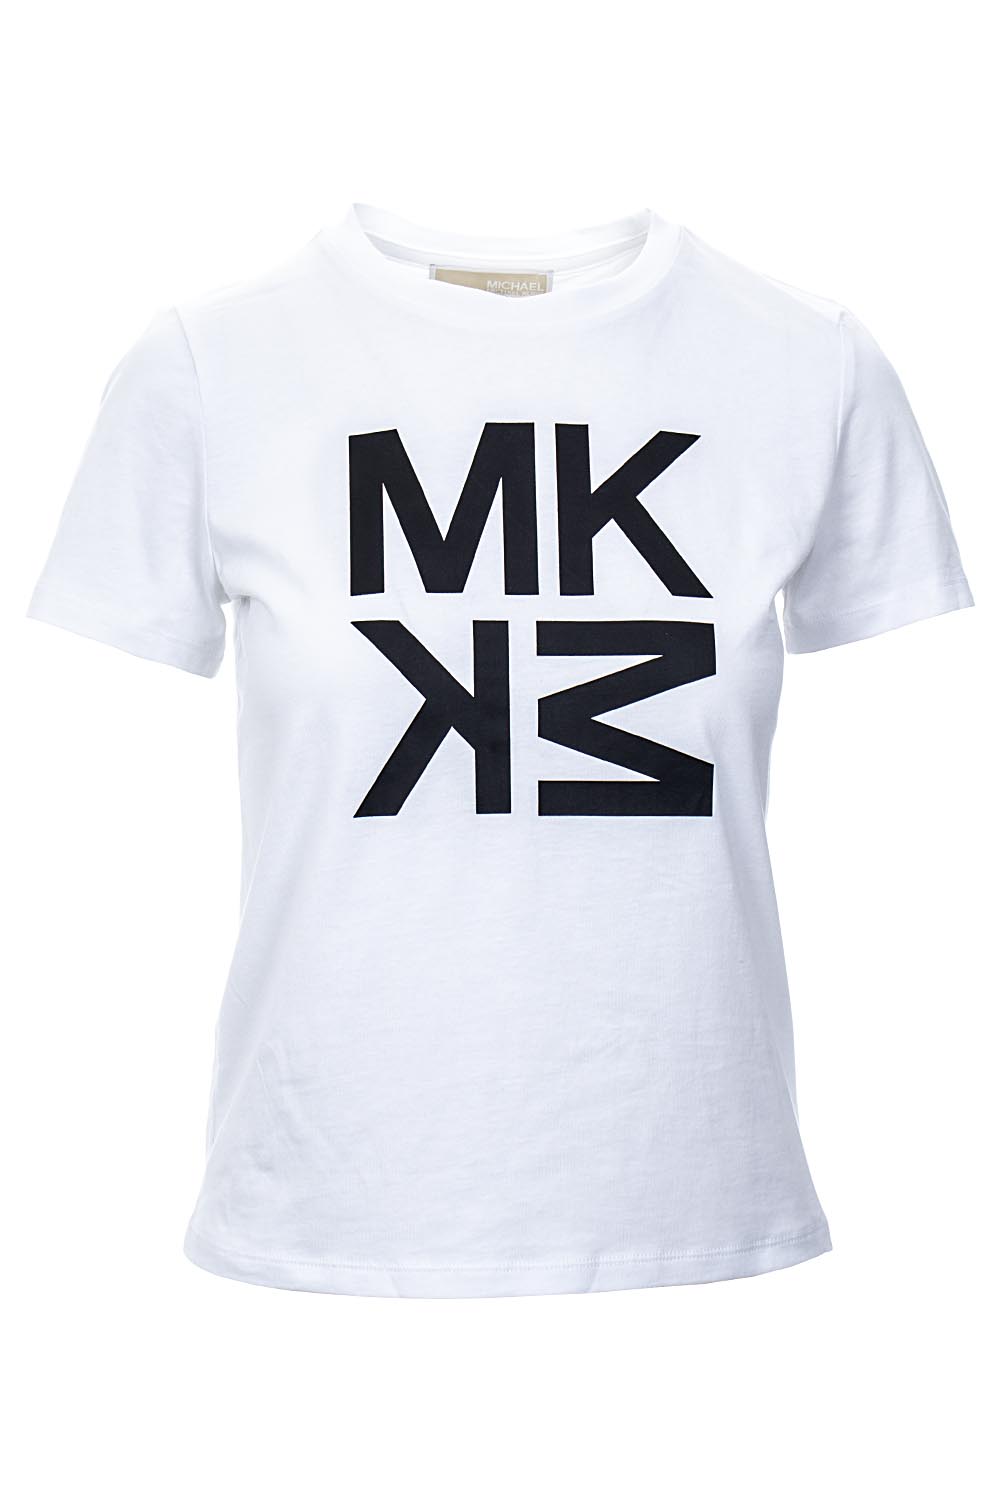 Michael Kors Dámské tričko bílé s monogramem MK Velikost: S